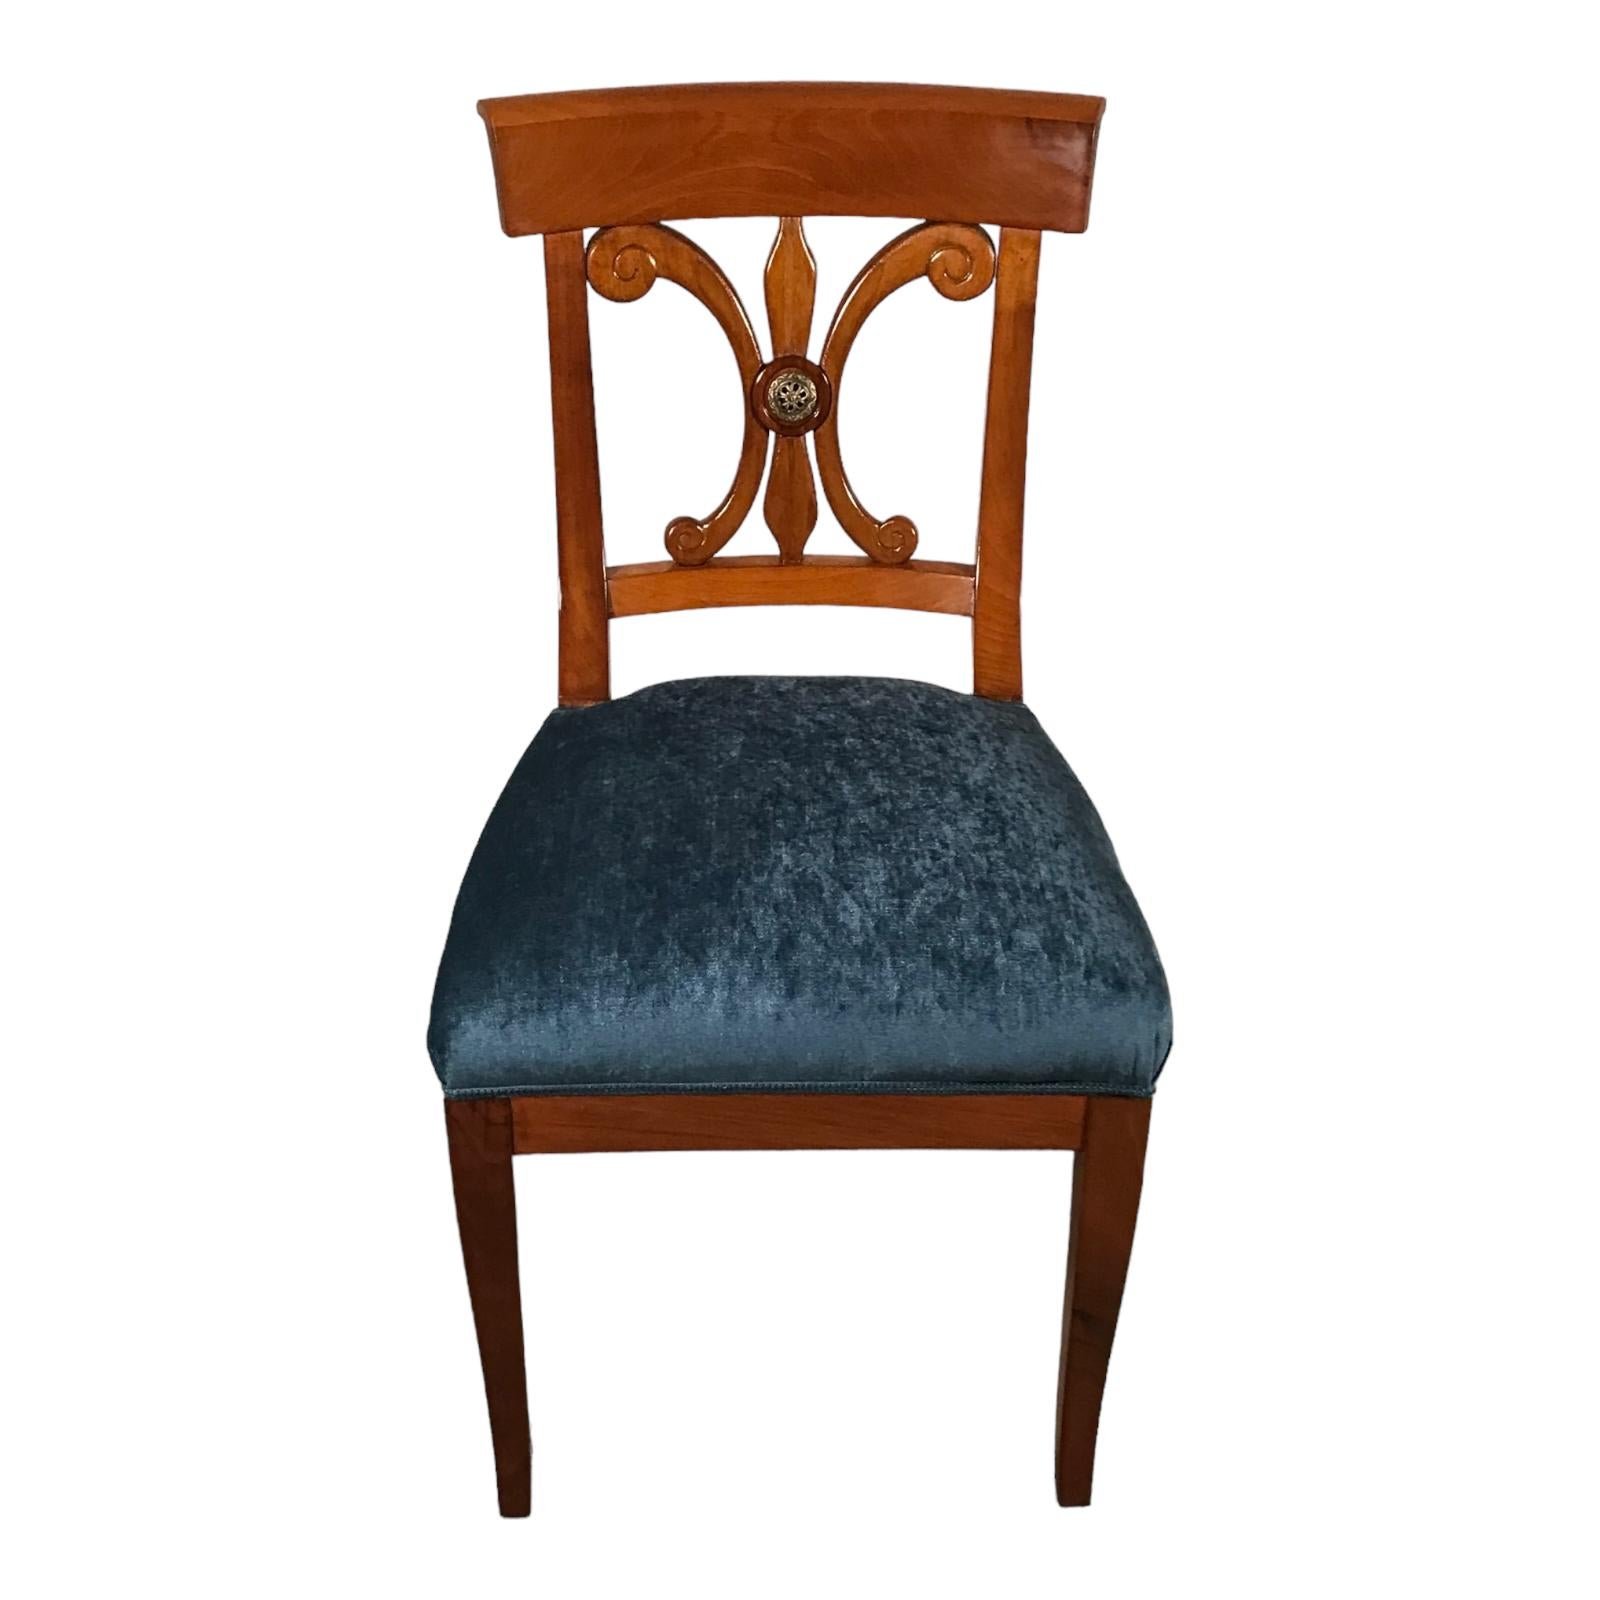 Chaises Biedermeier authentiques  Chefs-d'œuvre du XIXe siècle fabriqués à la main

Découvrez notre superbe ensemble de 6 chaises Biedermeier originales, qui témoignent d'un savoir-faire exquis datant du début du 19e siècle. Fabriquées à la main